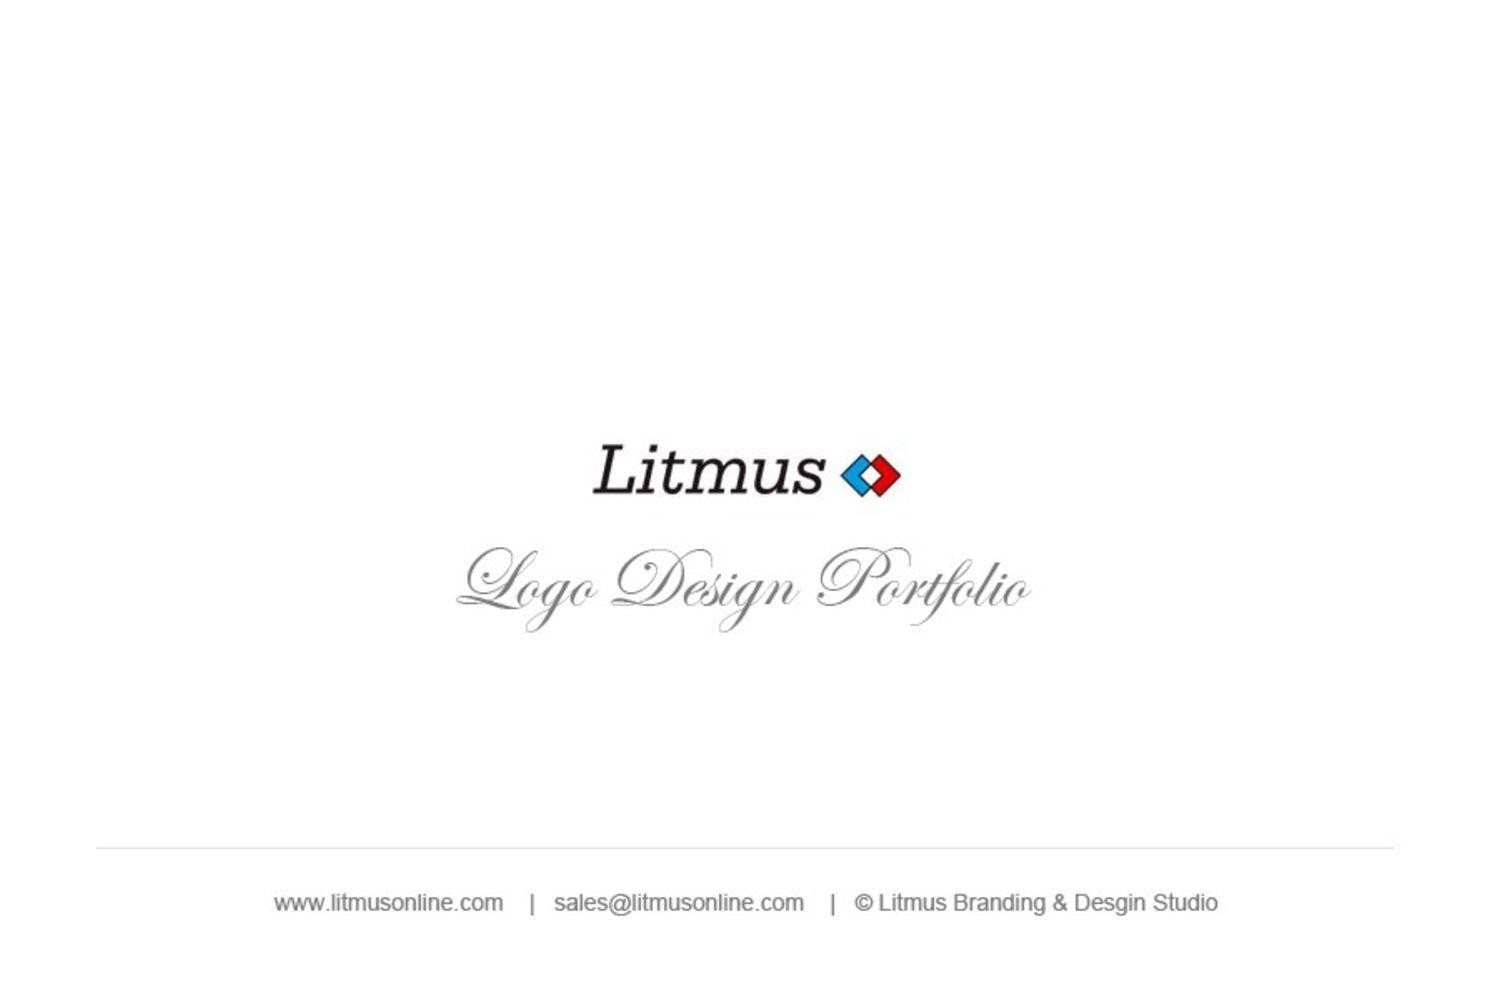 Litmus Logo - Calaméo - Litmus Logo Design Portfolio - Best Graphic Design Logo